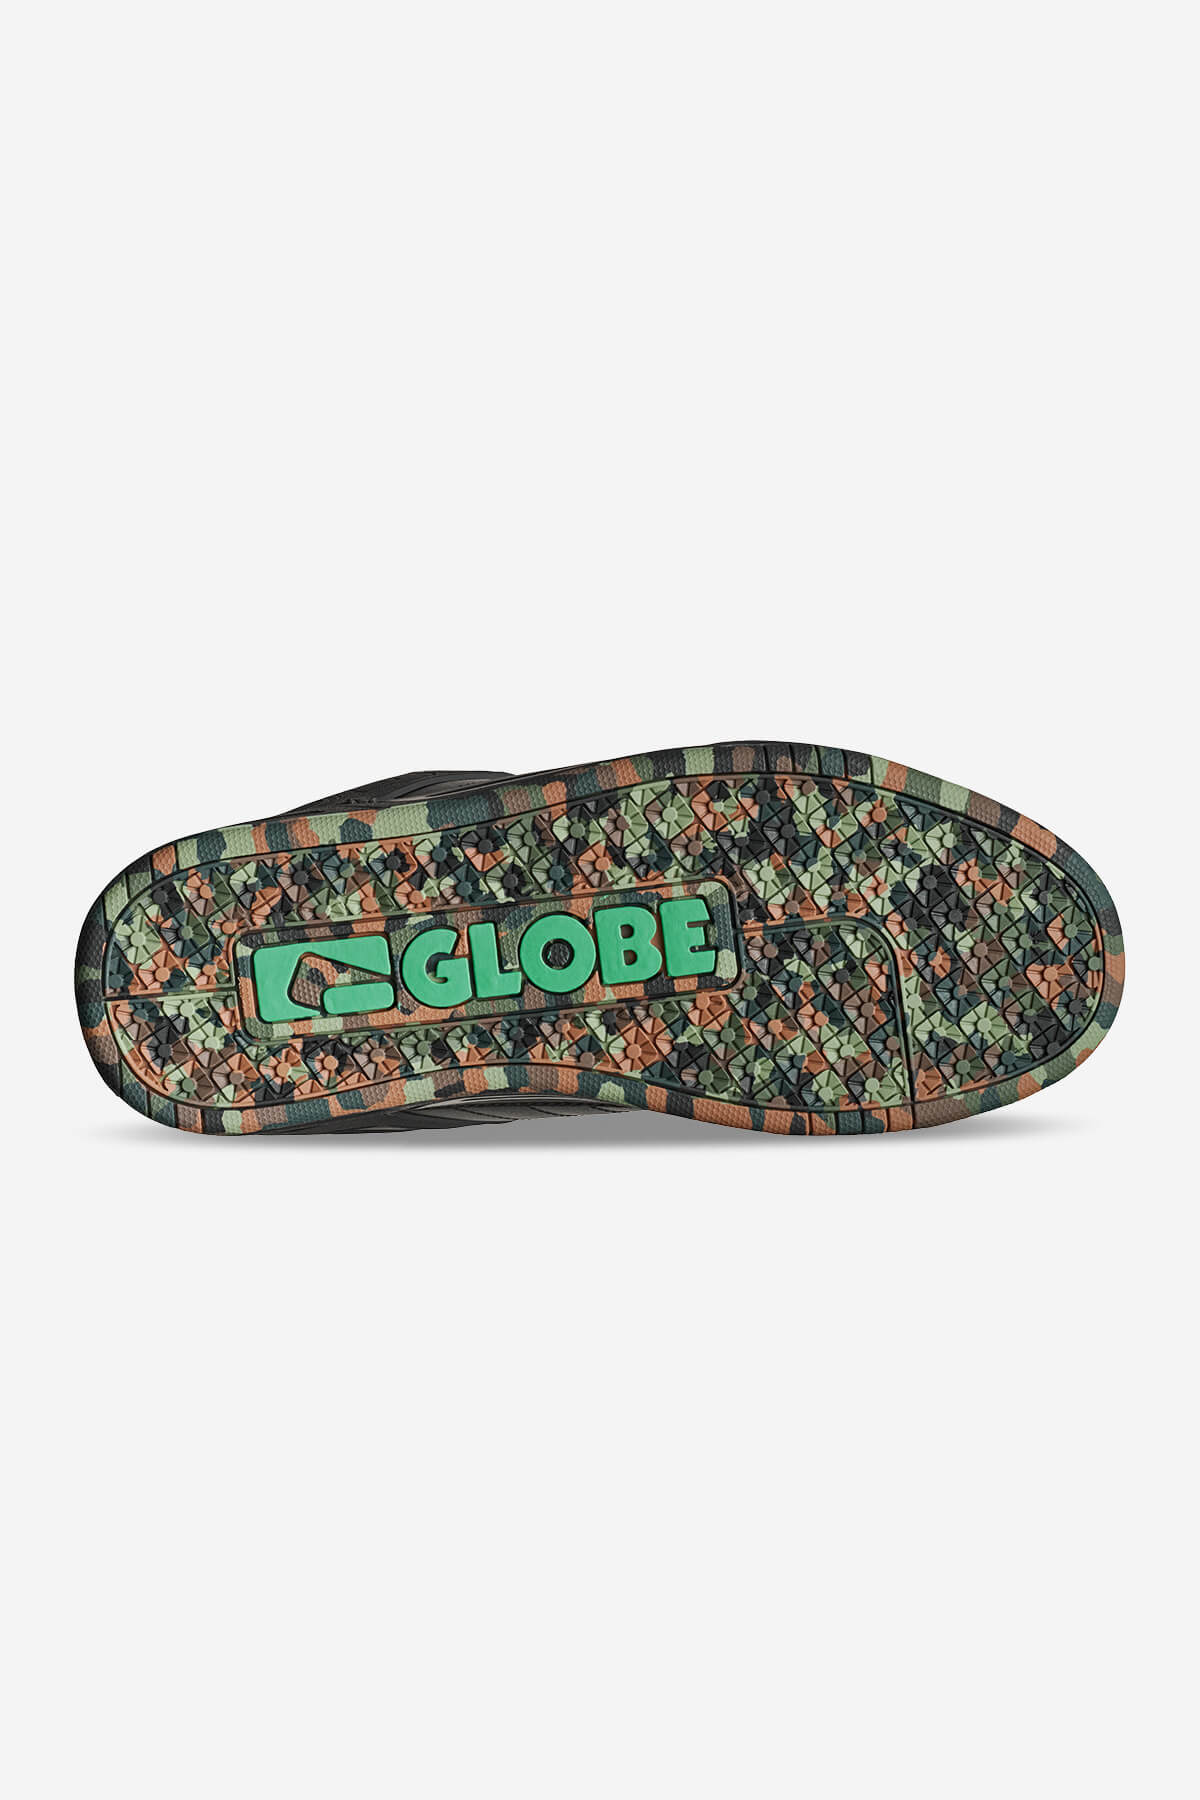 Globe - Tilt - Black/Green/Mosaic - Skate Shoes